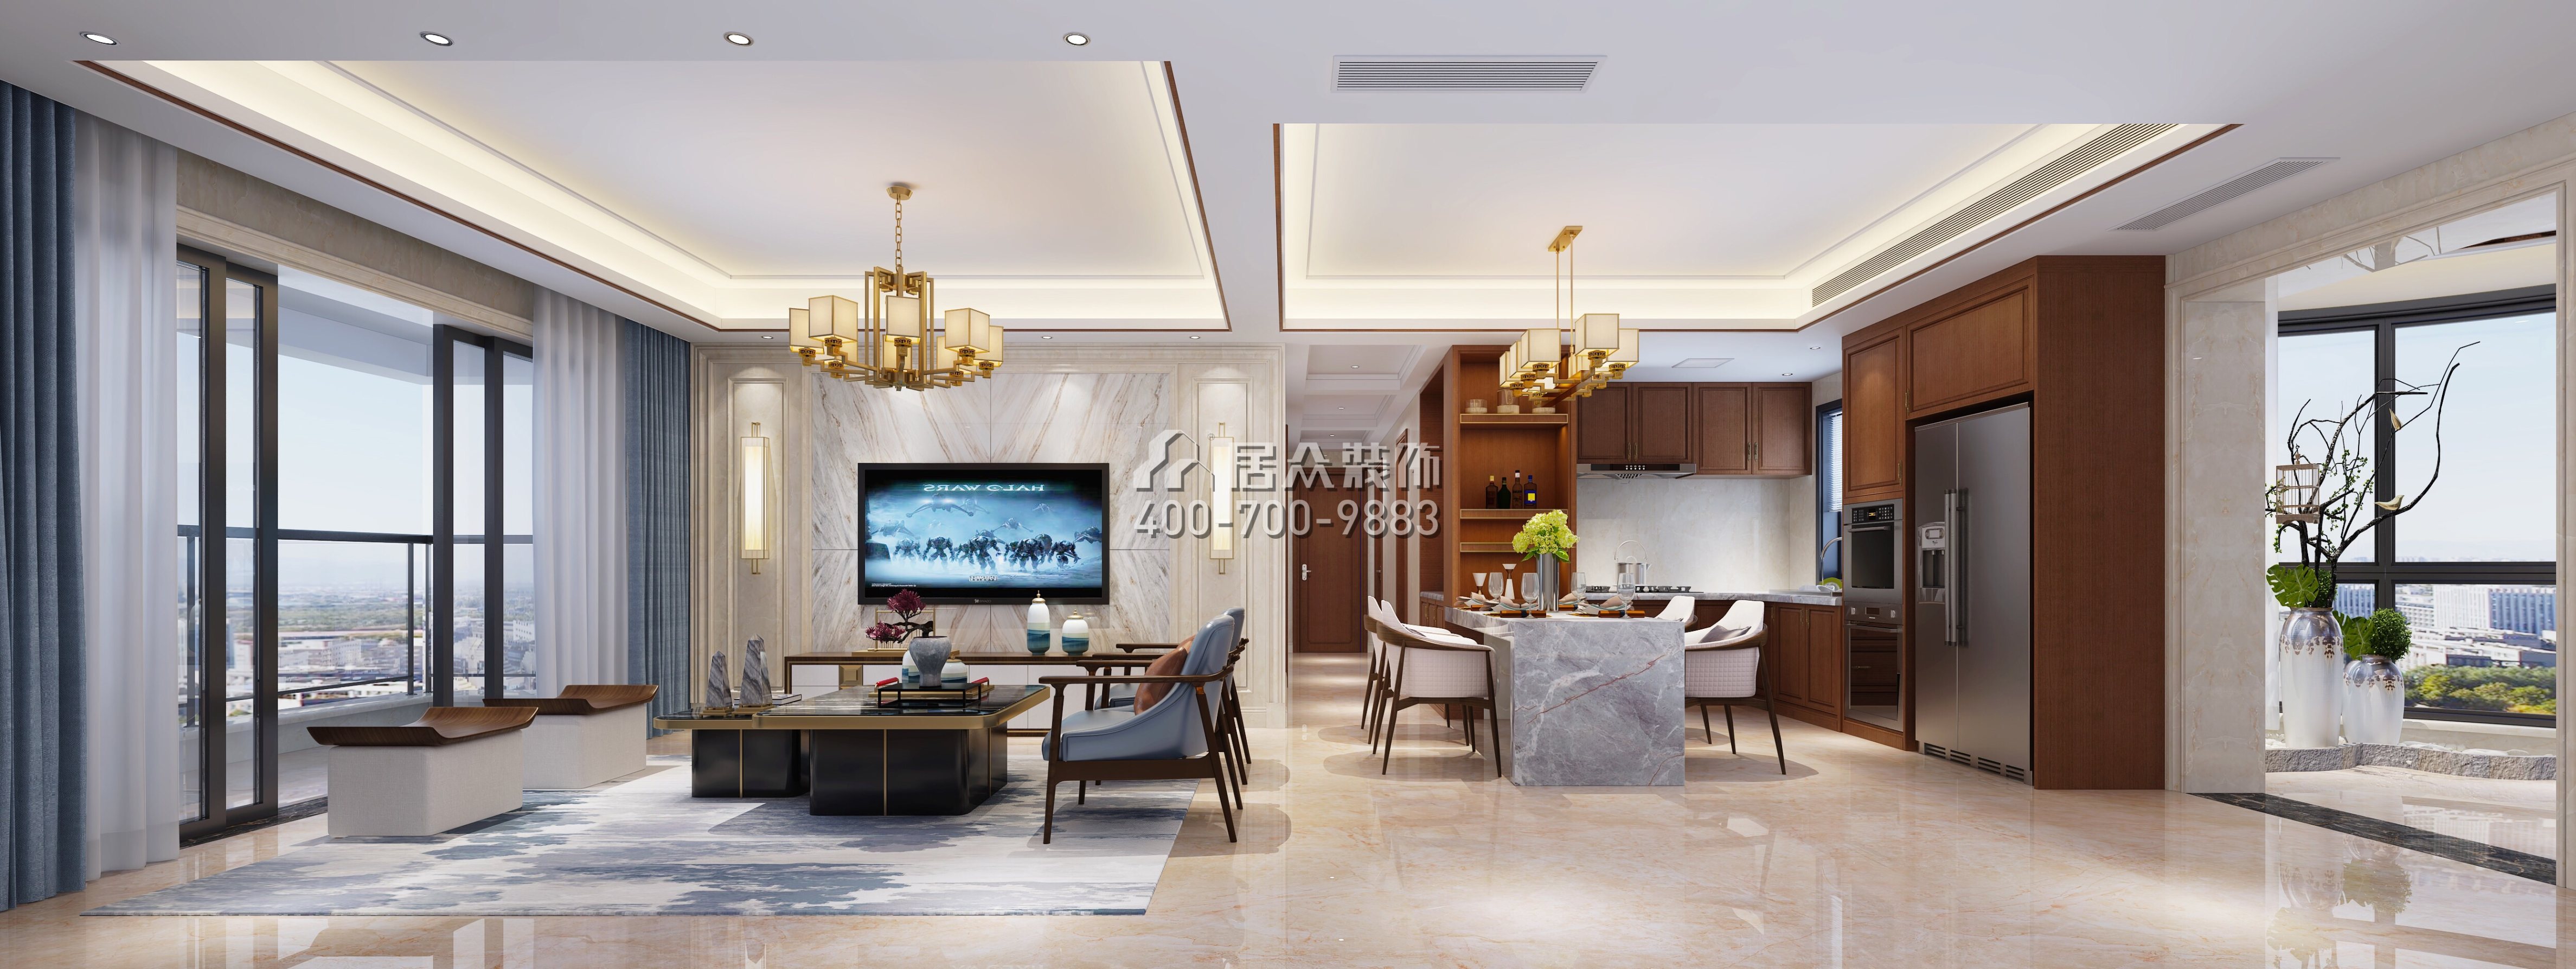 龙瑞佳园148平方米中式风格平层户型客厅装修效果图